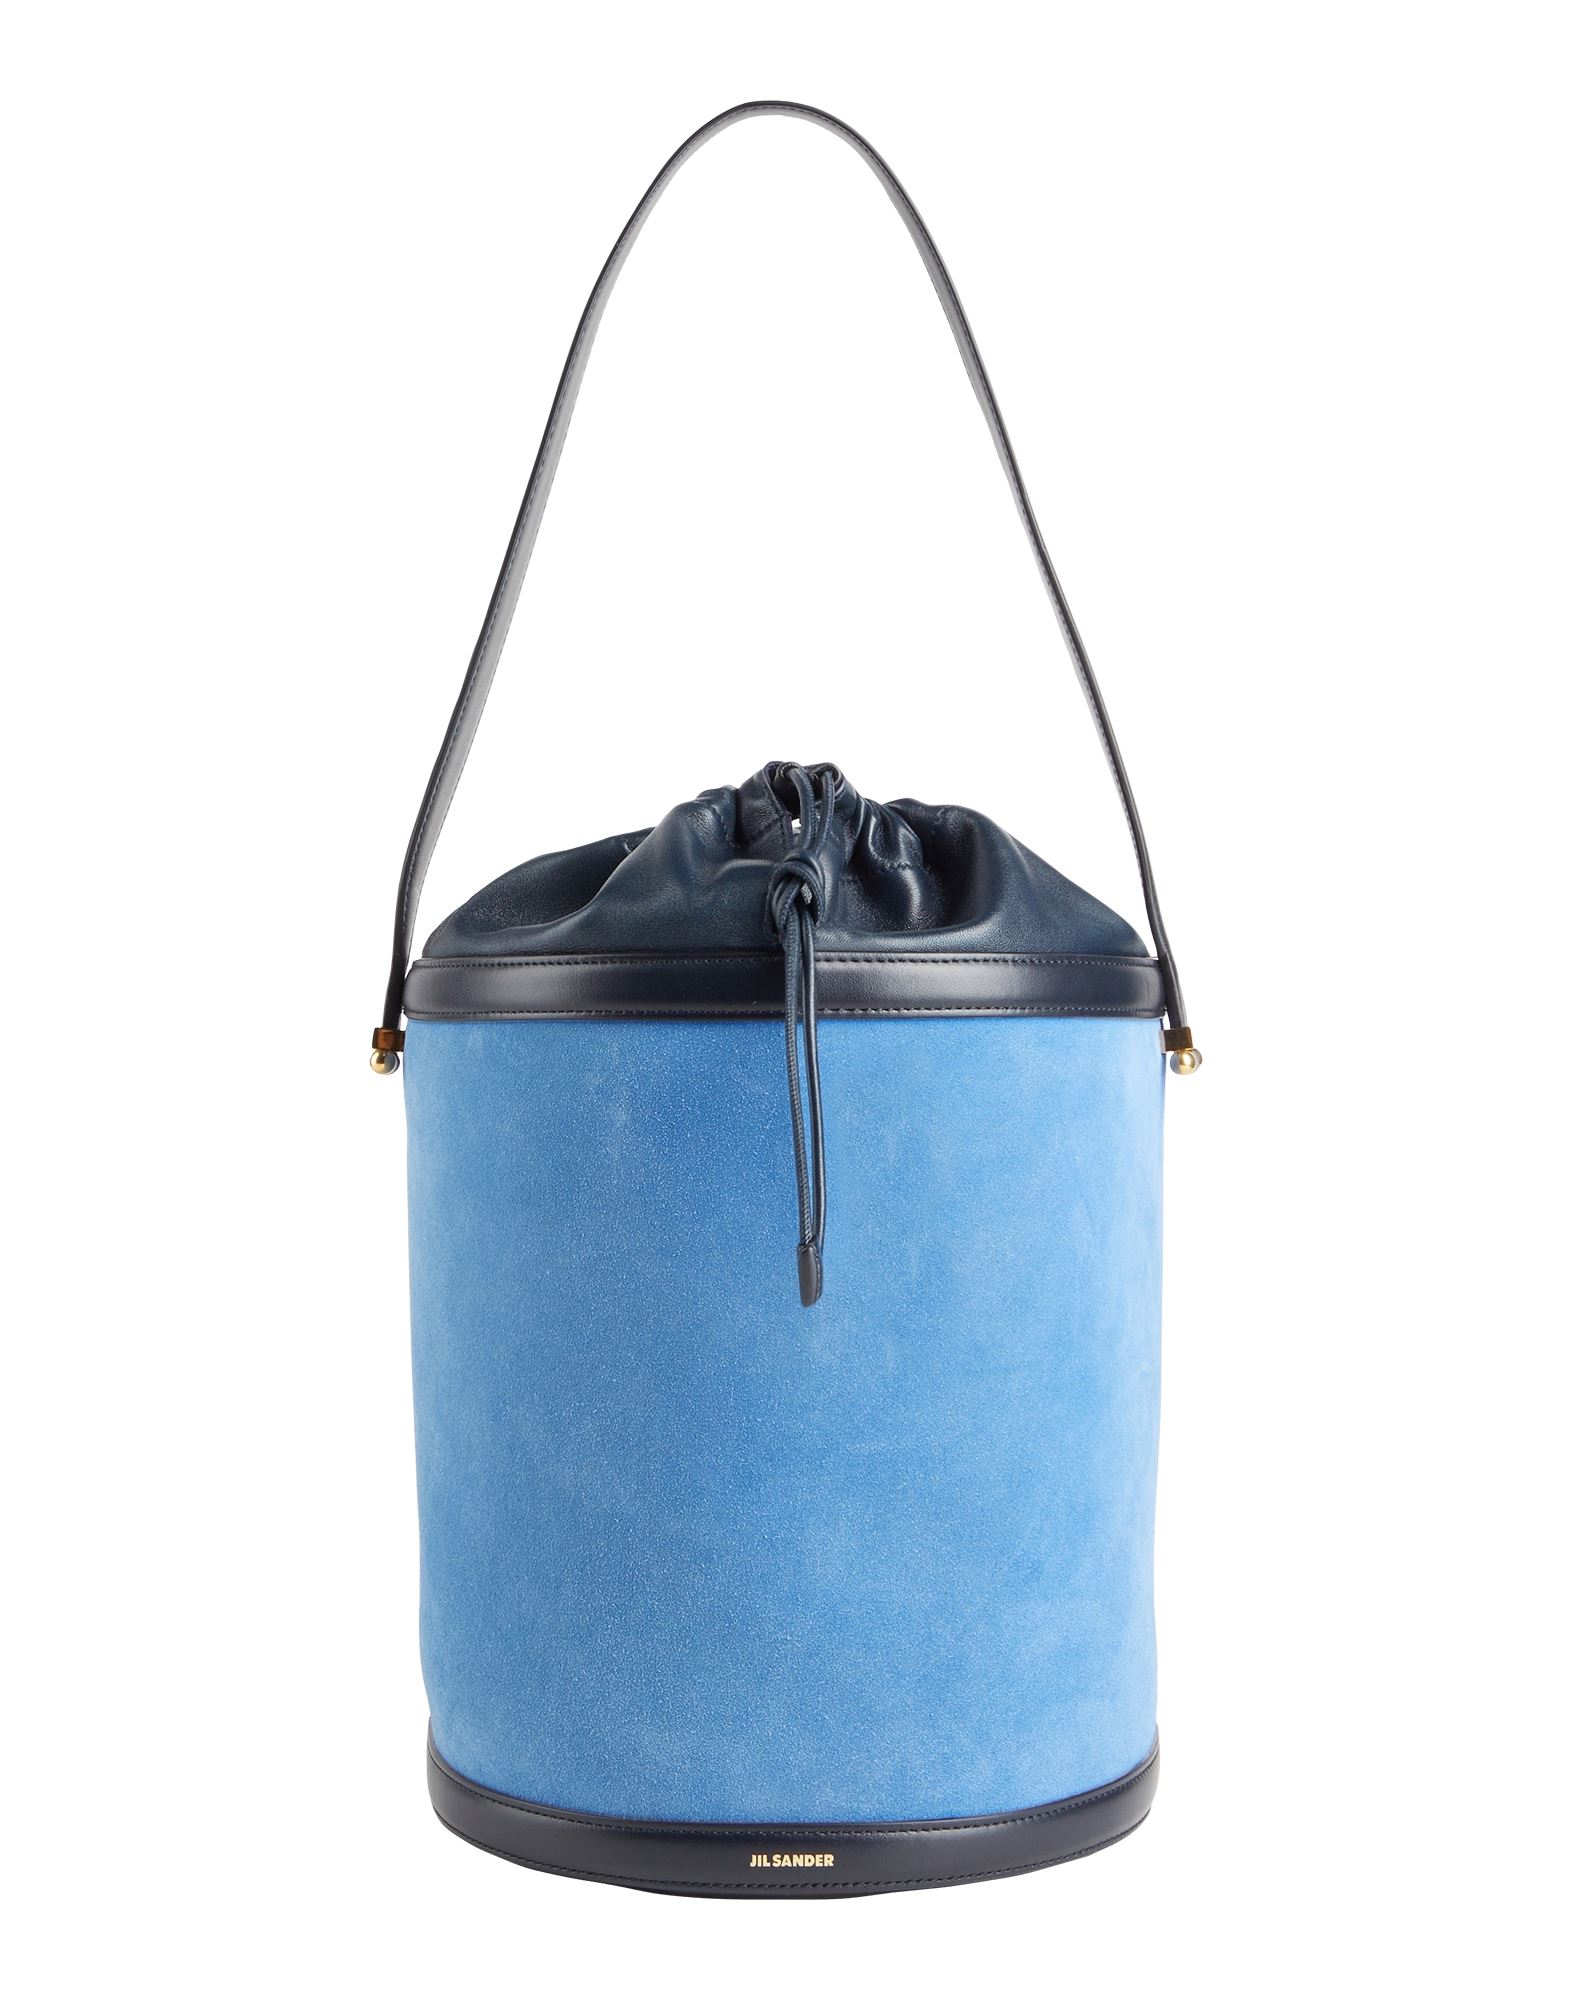 Jil Sander Handbags In Bright Blue